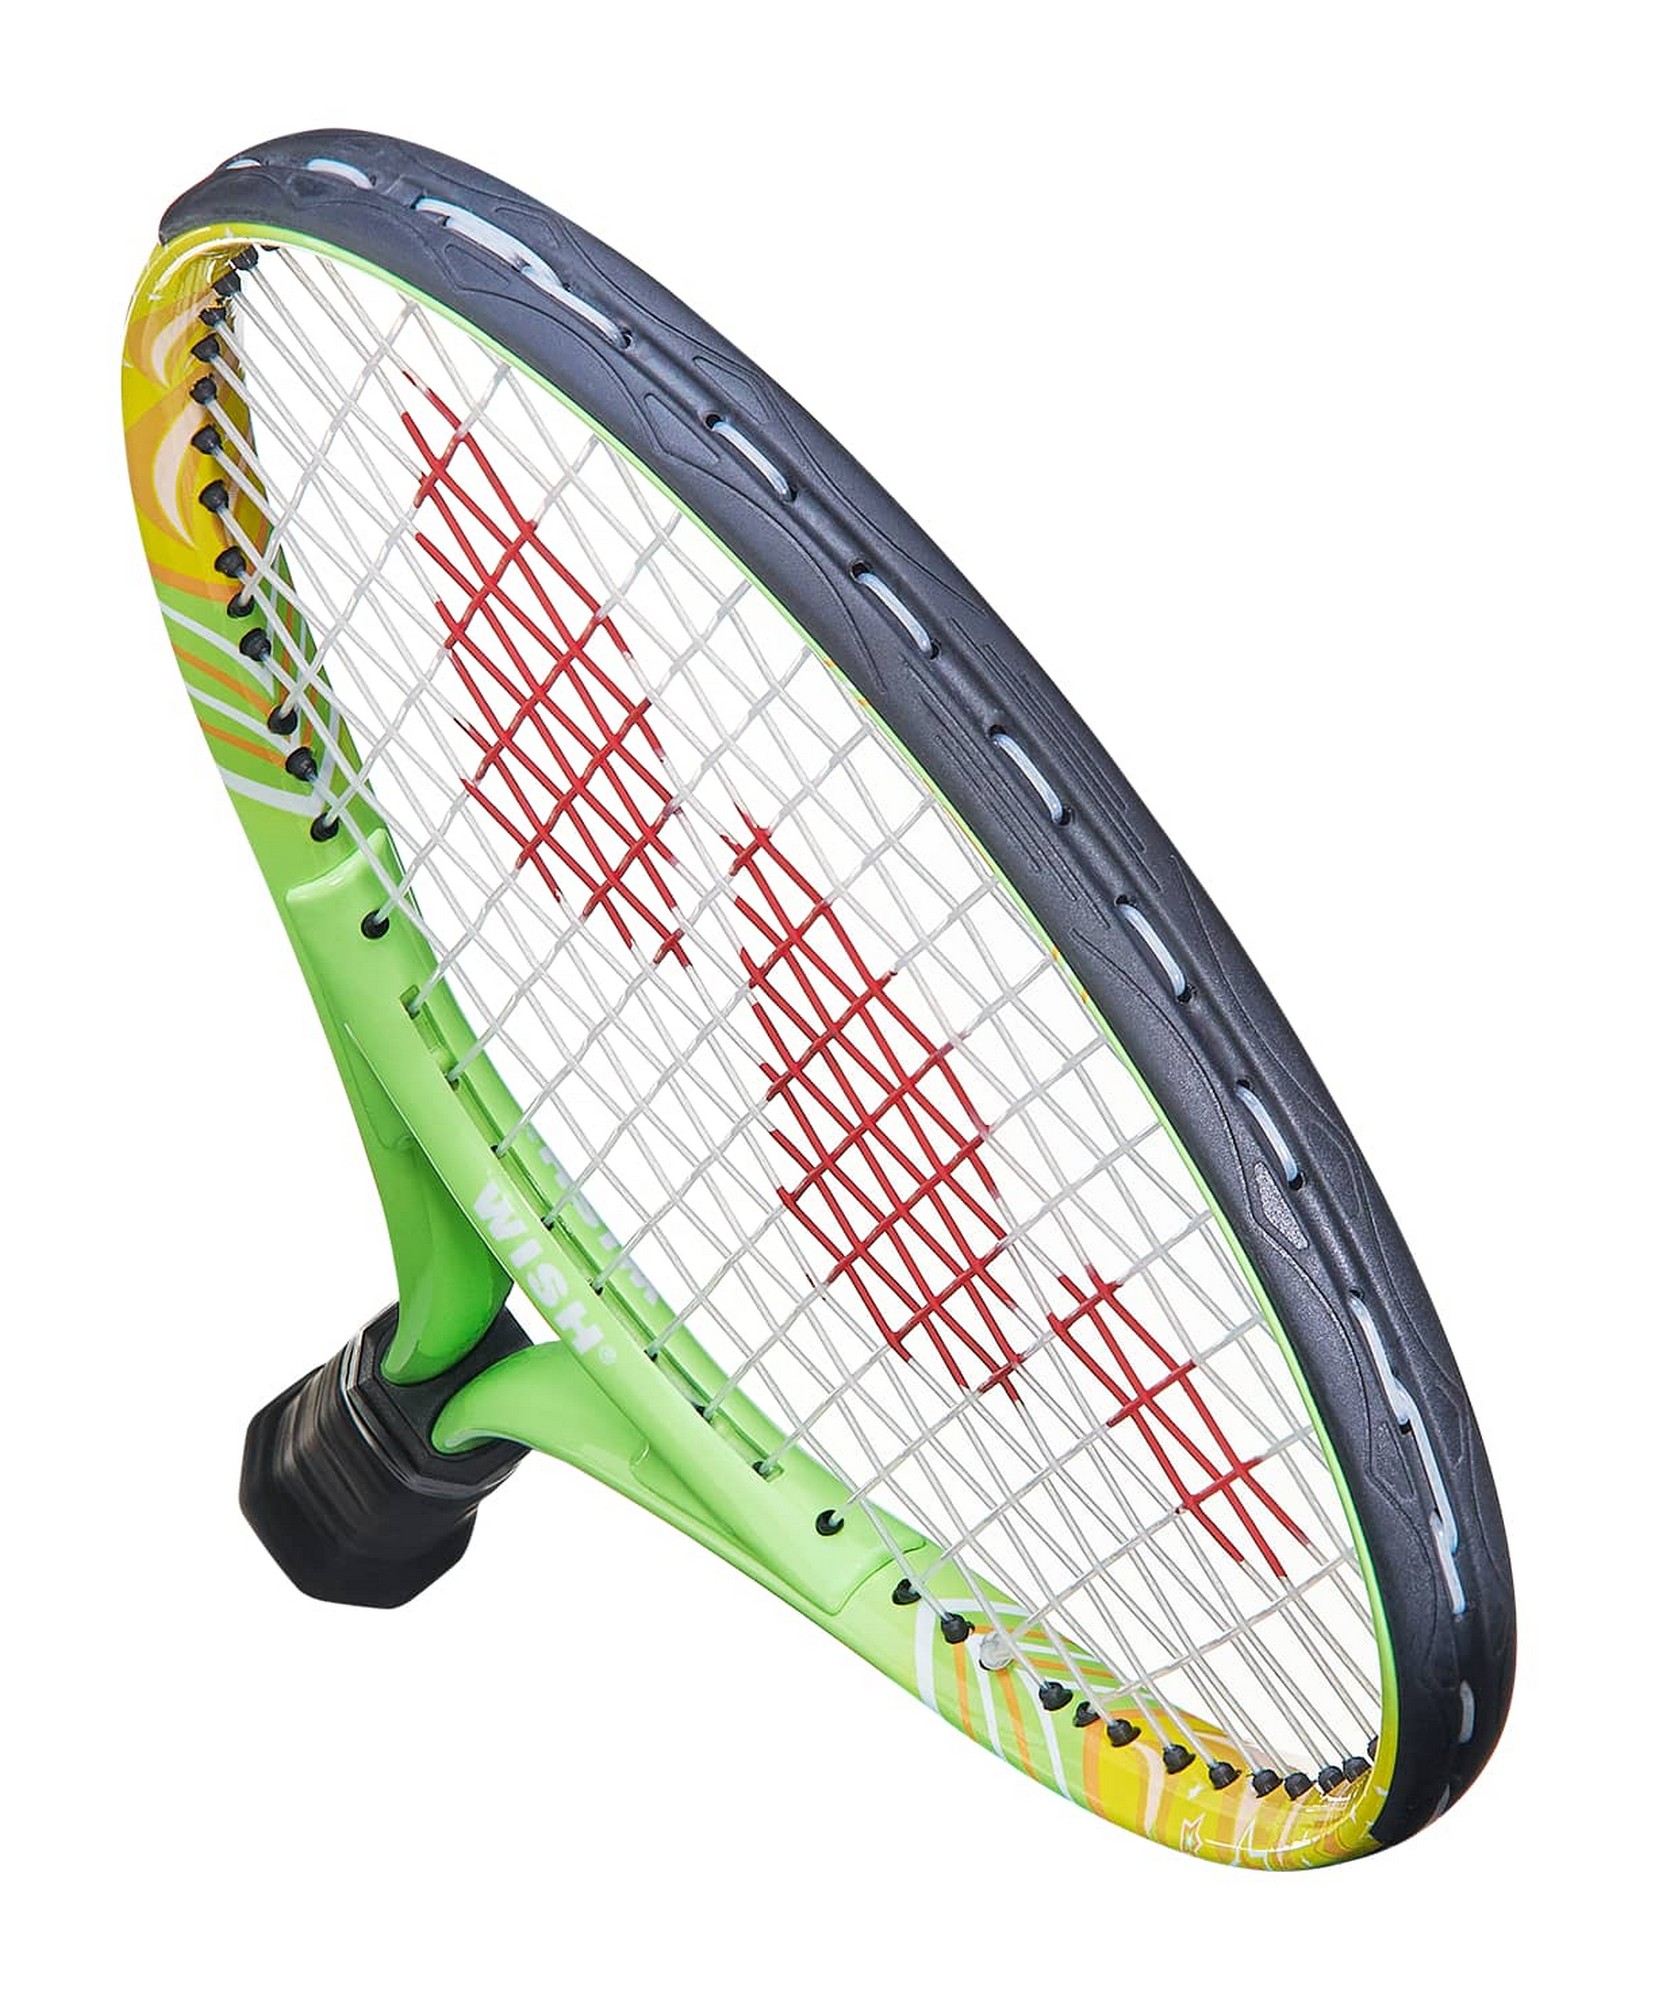 Ракетка для большого тенниса Wish AlumTec JR, 19’’ 2900 зеленый 1663_2000